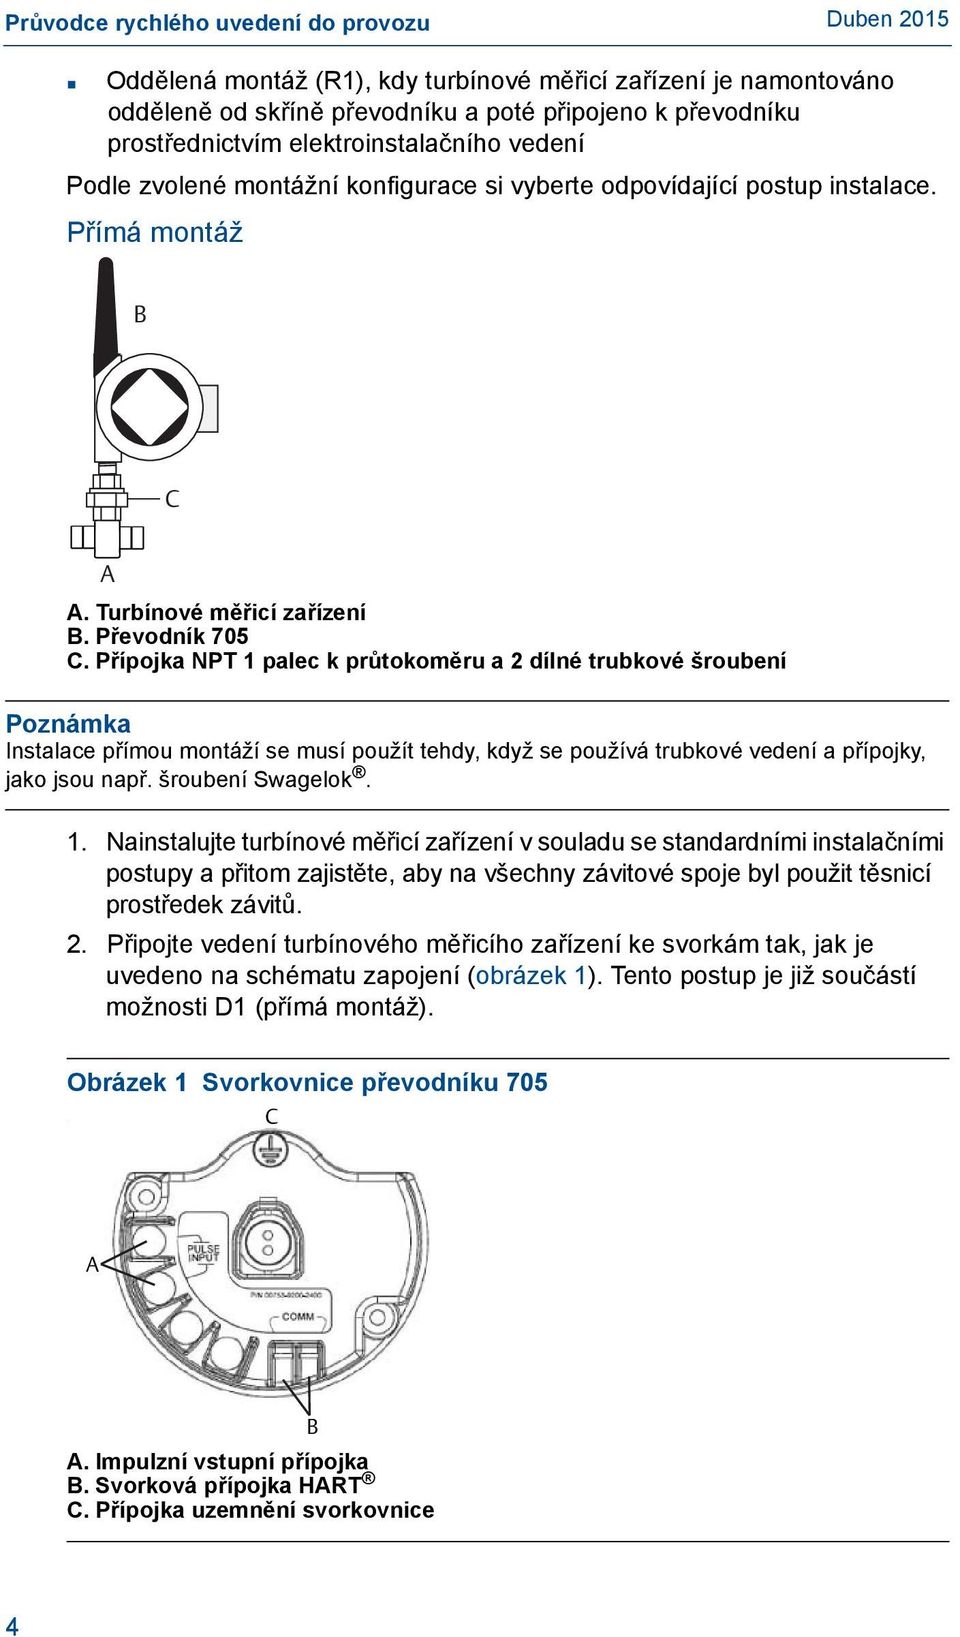 Přípojka NPT 1 palec k průtokoměru a 2 dílné trubkové šroubení Poznámka Instalace přímou montáží se musí použít tehdy, když se používá trubkové vedení a přípojky, jako jsou např. šroubení Swagelok. 1. Nainstalujte turbínové měřicí zařízení v souladu se standardními instalačními postupy a přitom zajistěte, aby na všechny závitové spoje byl použit těsnicí prostředek závitů.